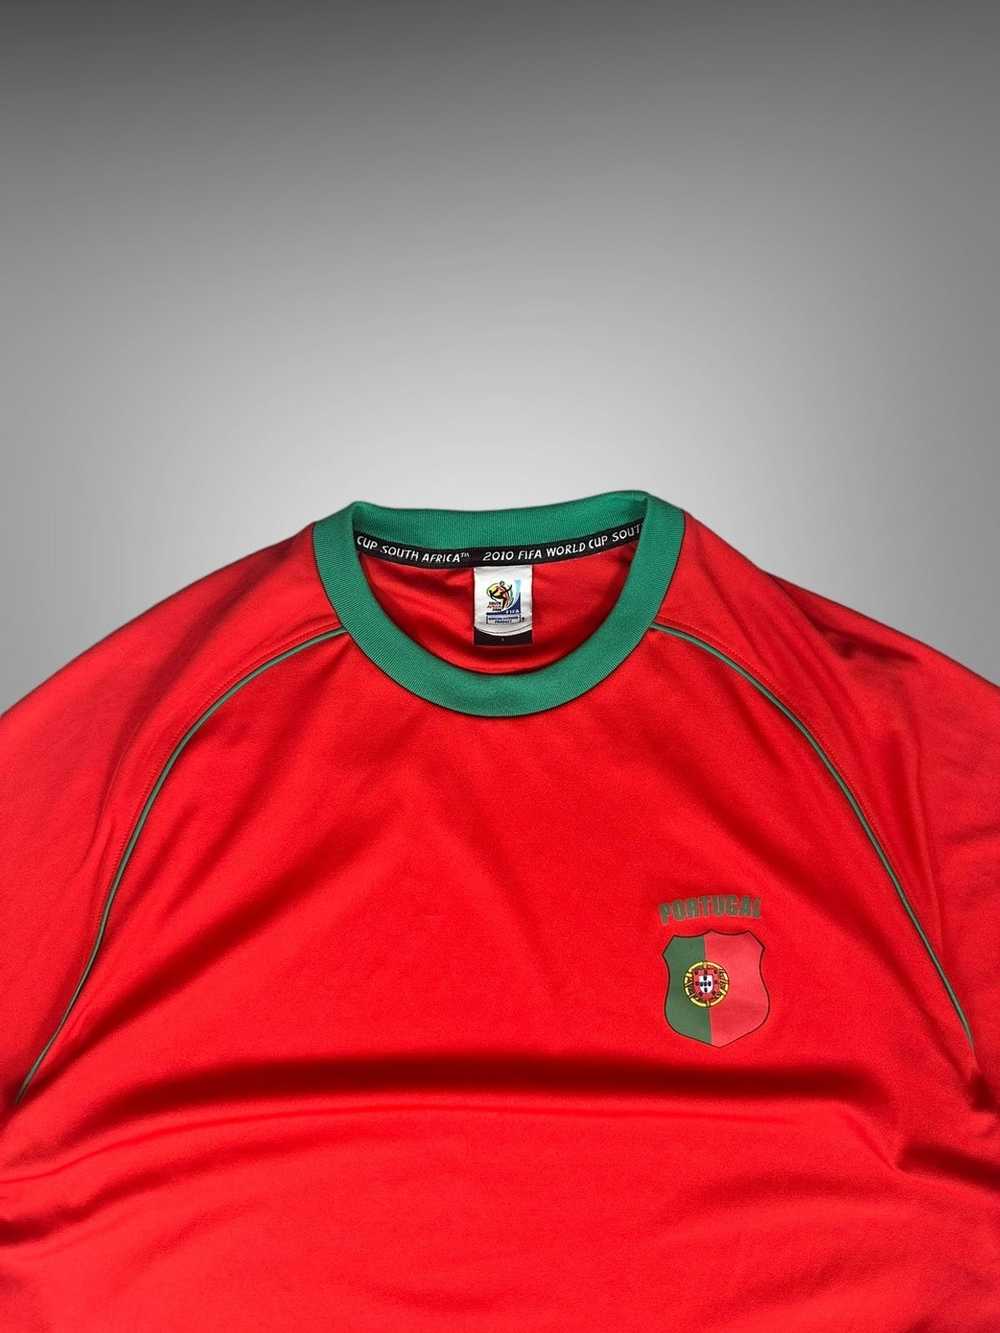 Soccer Jersey × Vintage Vintage Portugal Futbol J… - image 3